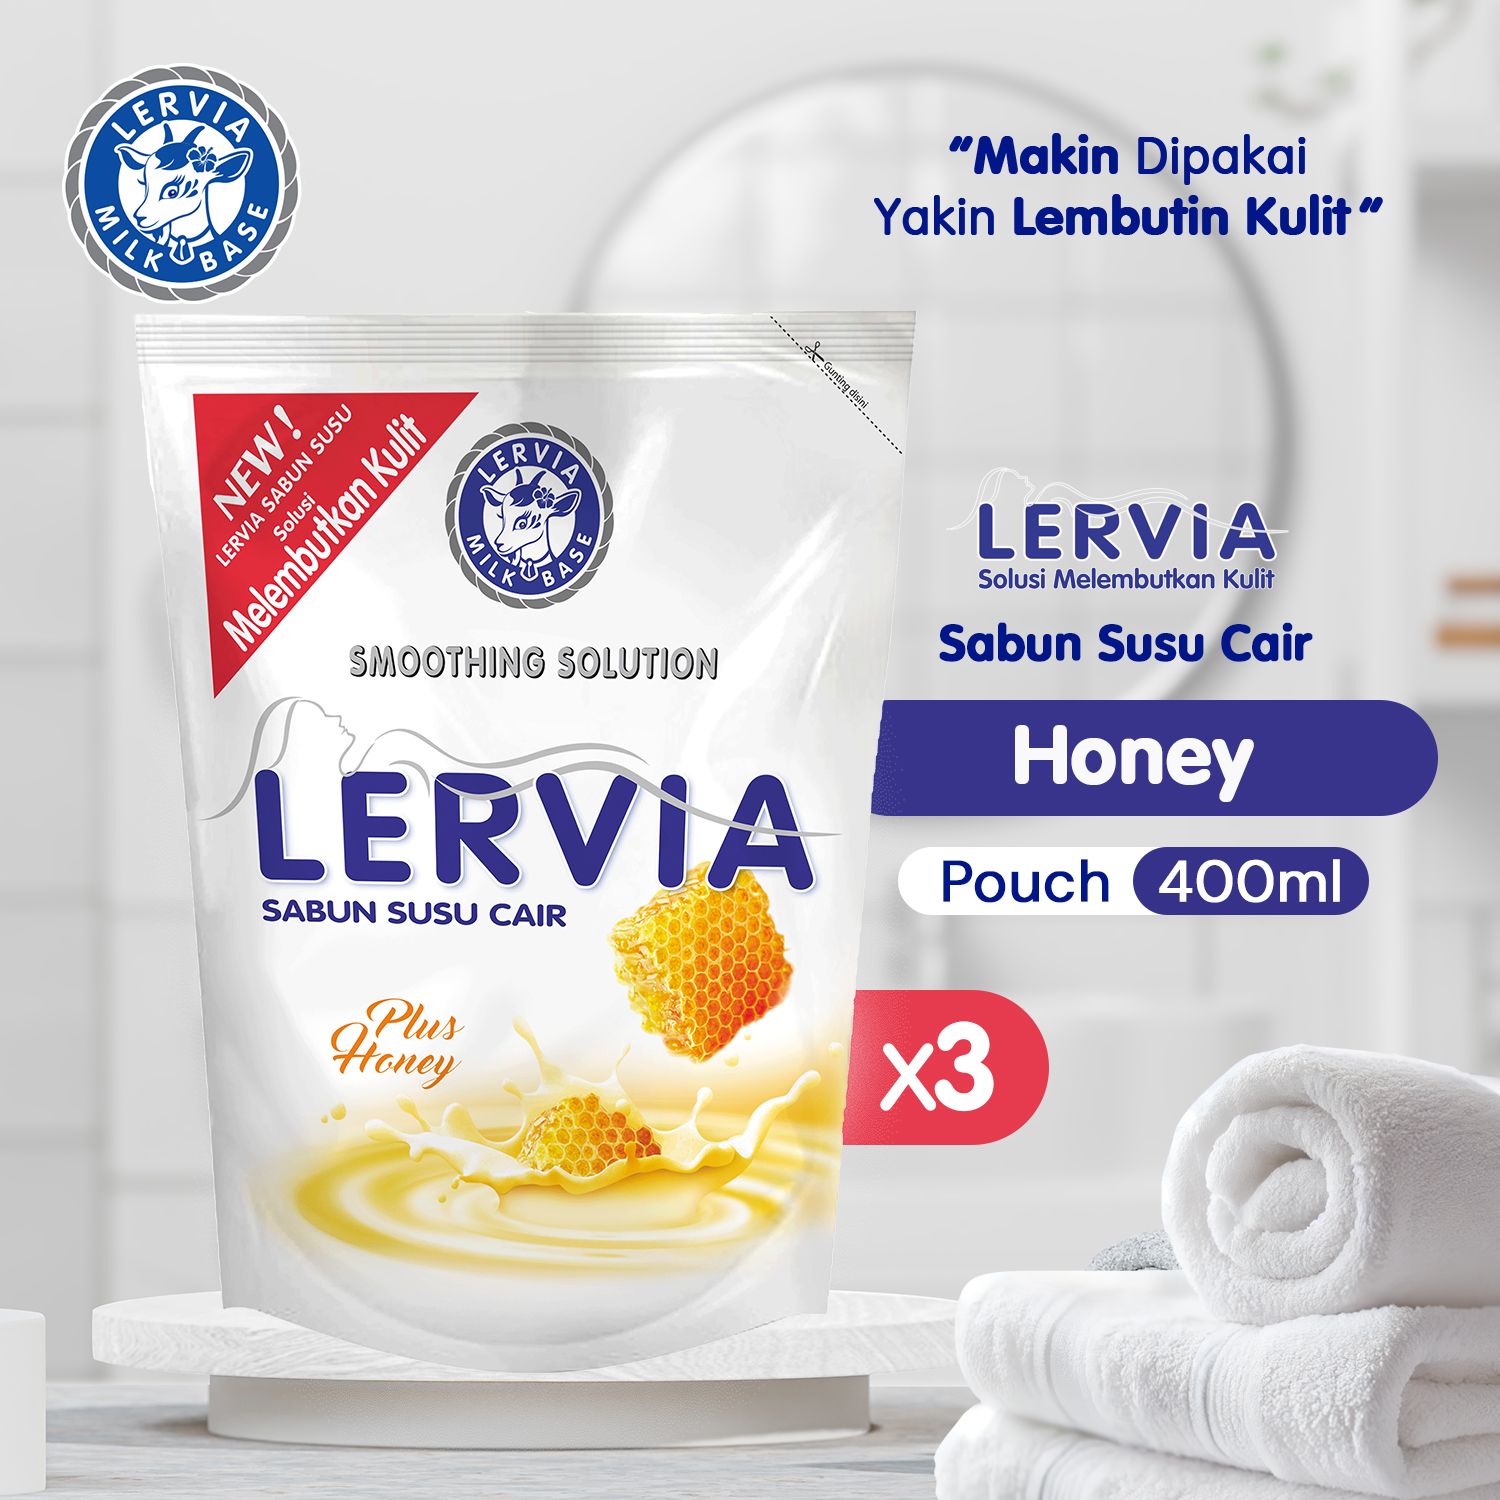 LERVIA Sabun Susu Cair Plus Honey 400mL Value Pack - 1